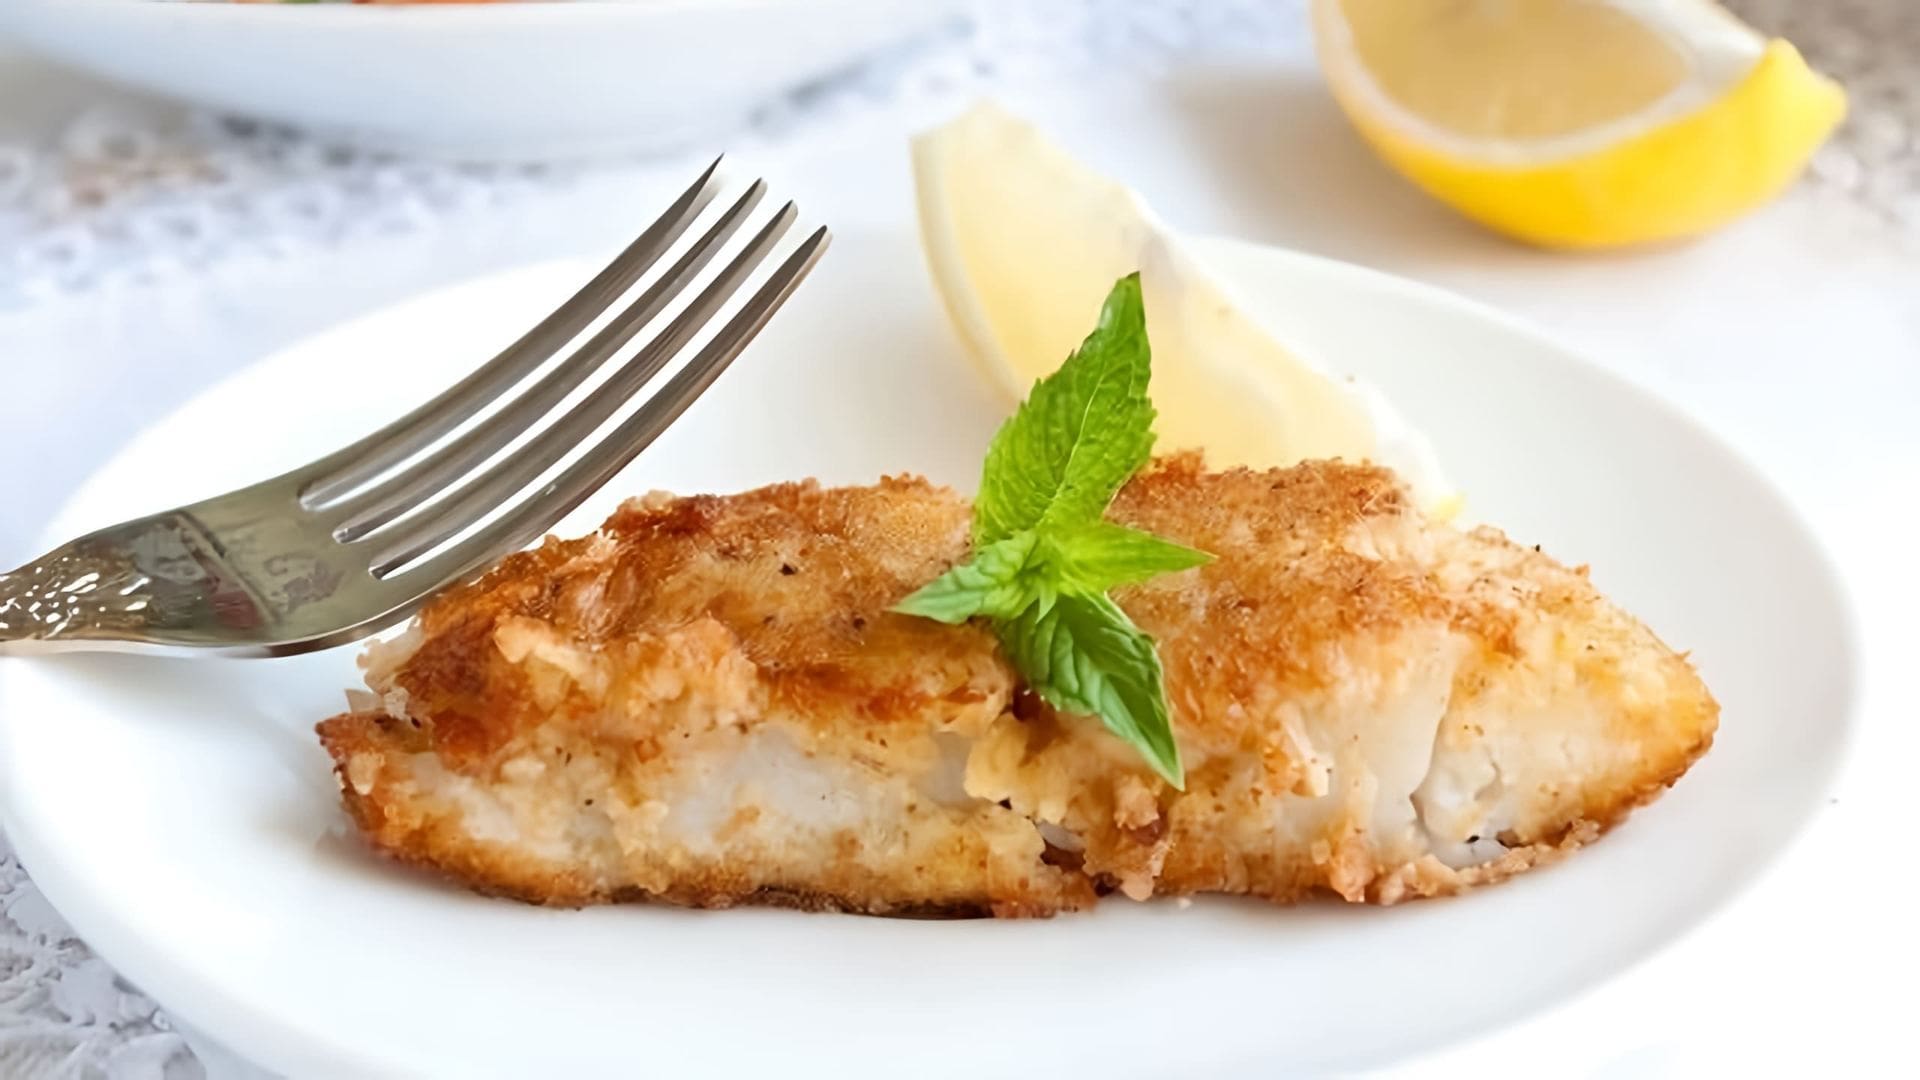 В этом видео демонстрируется простой и быстрый рецепт приготовления рыбного филе